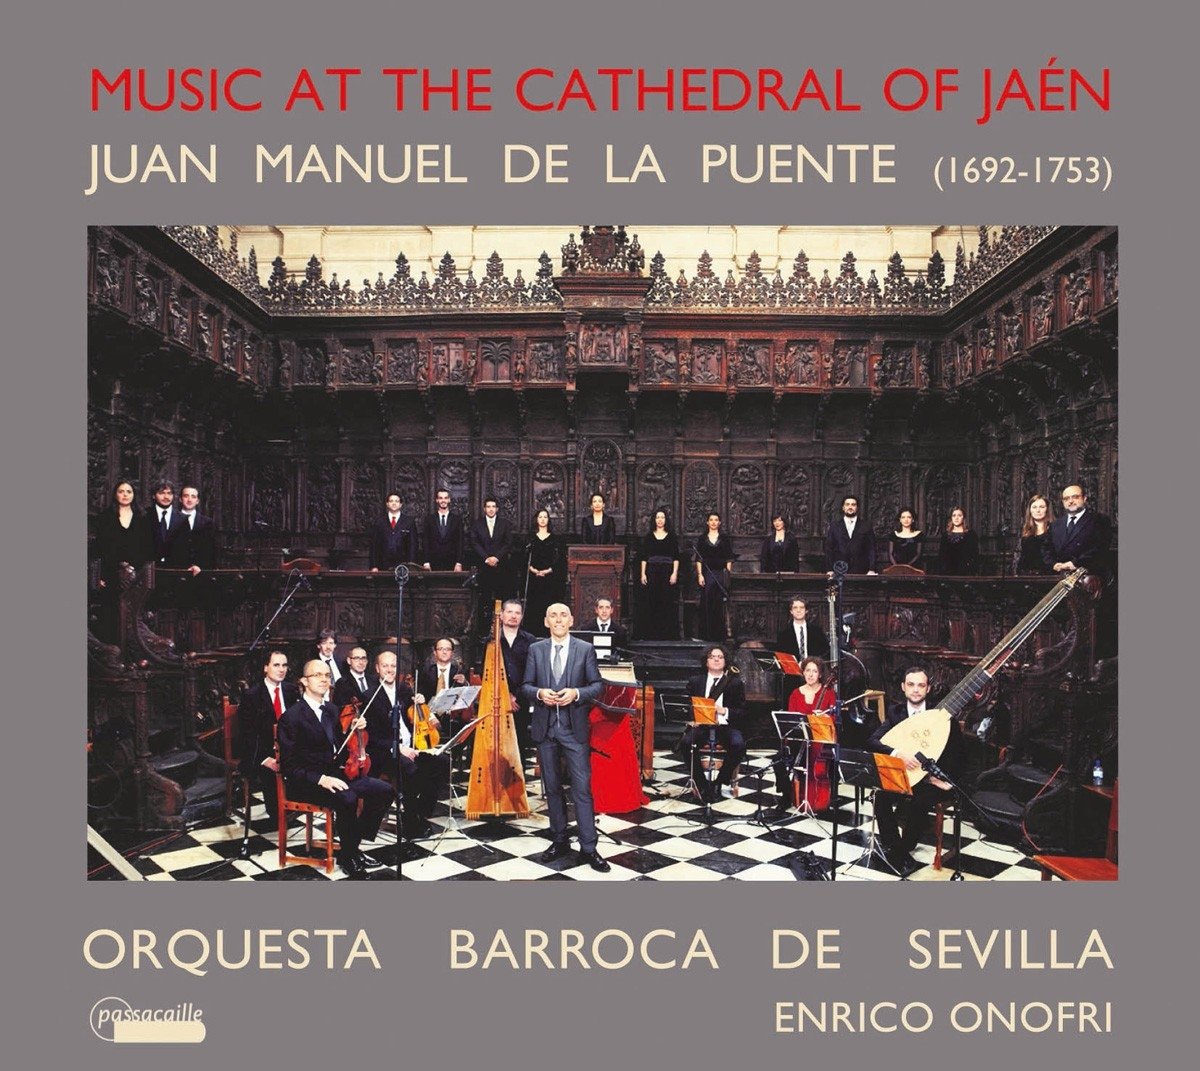 DE LA PUENTE: Music at the Cathedral of Jaen - Orquesta barroca de Sevilla